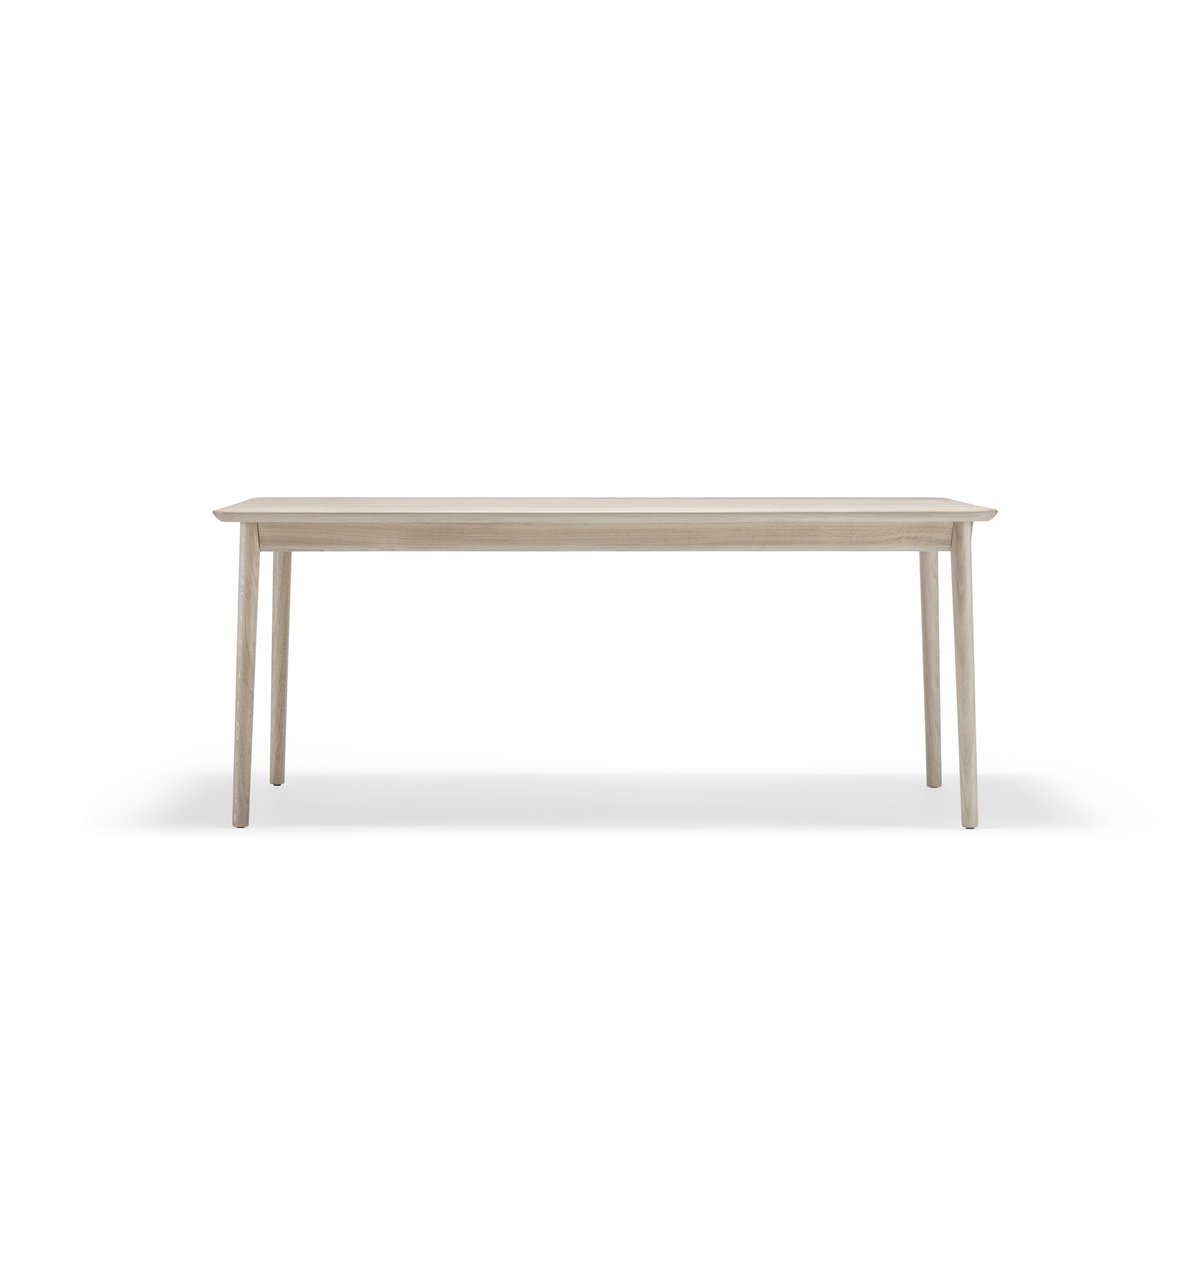 Stolab Prima Vista tafel Eikenhout lichte matte lak-180cm-1 inlegblad